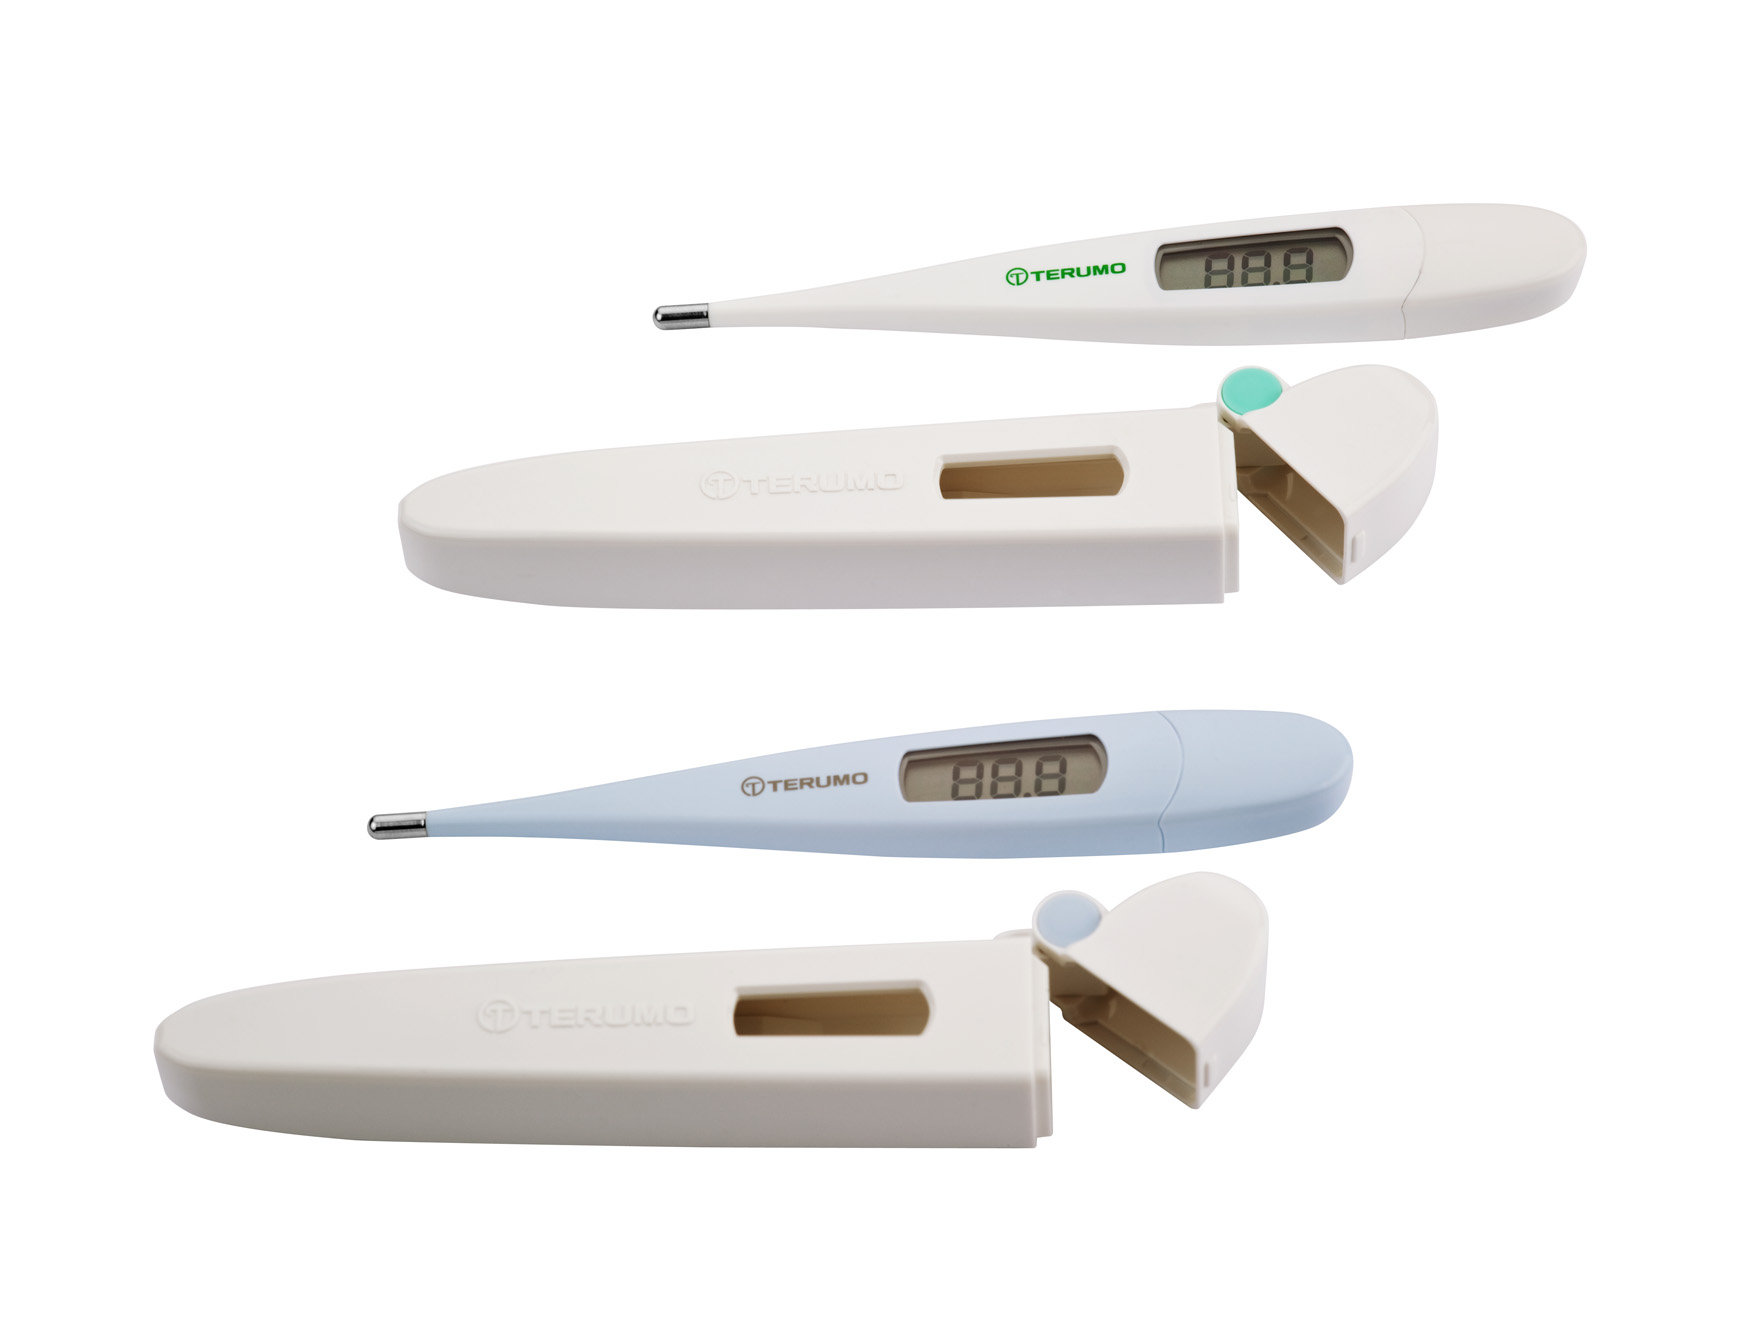 Thermomètre rectale-orale Terumo, Mesures de température précises